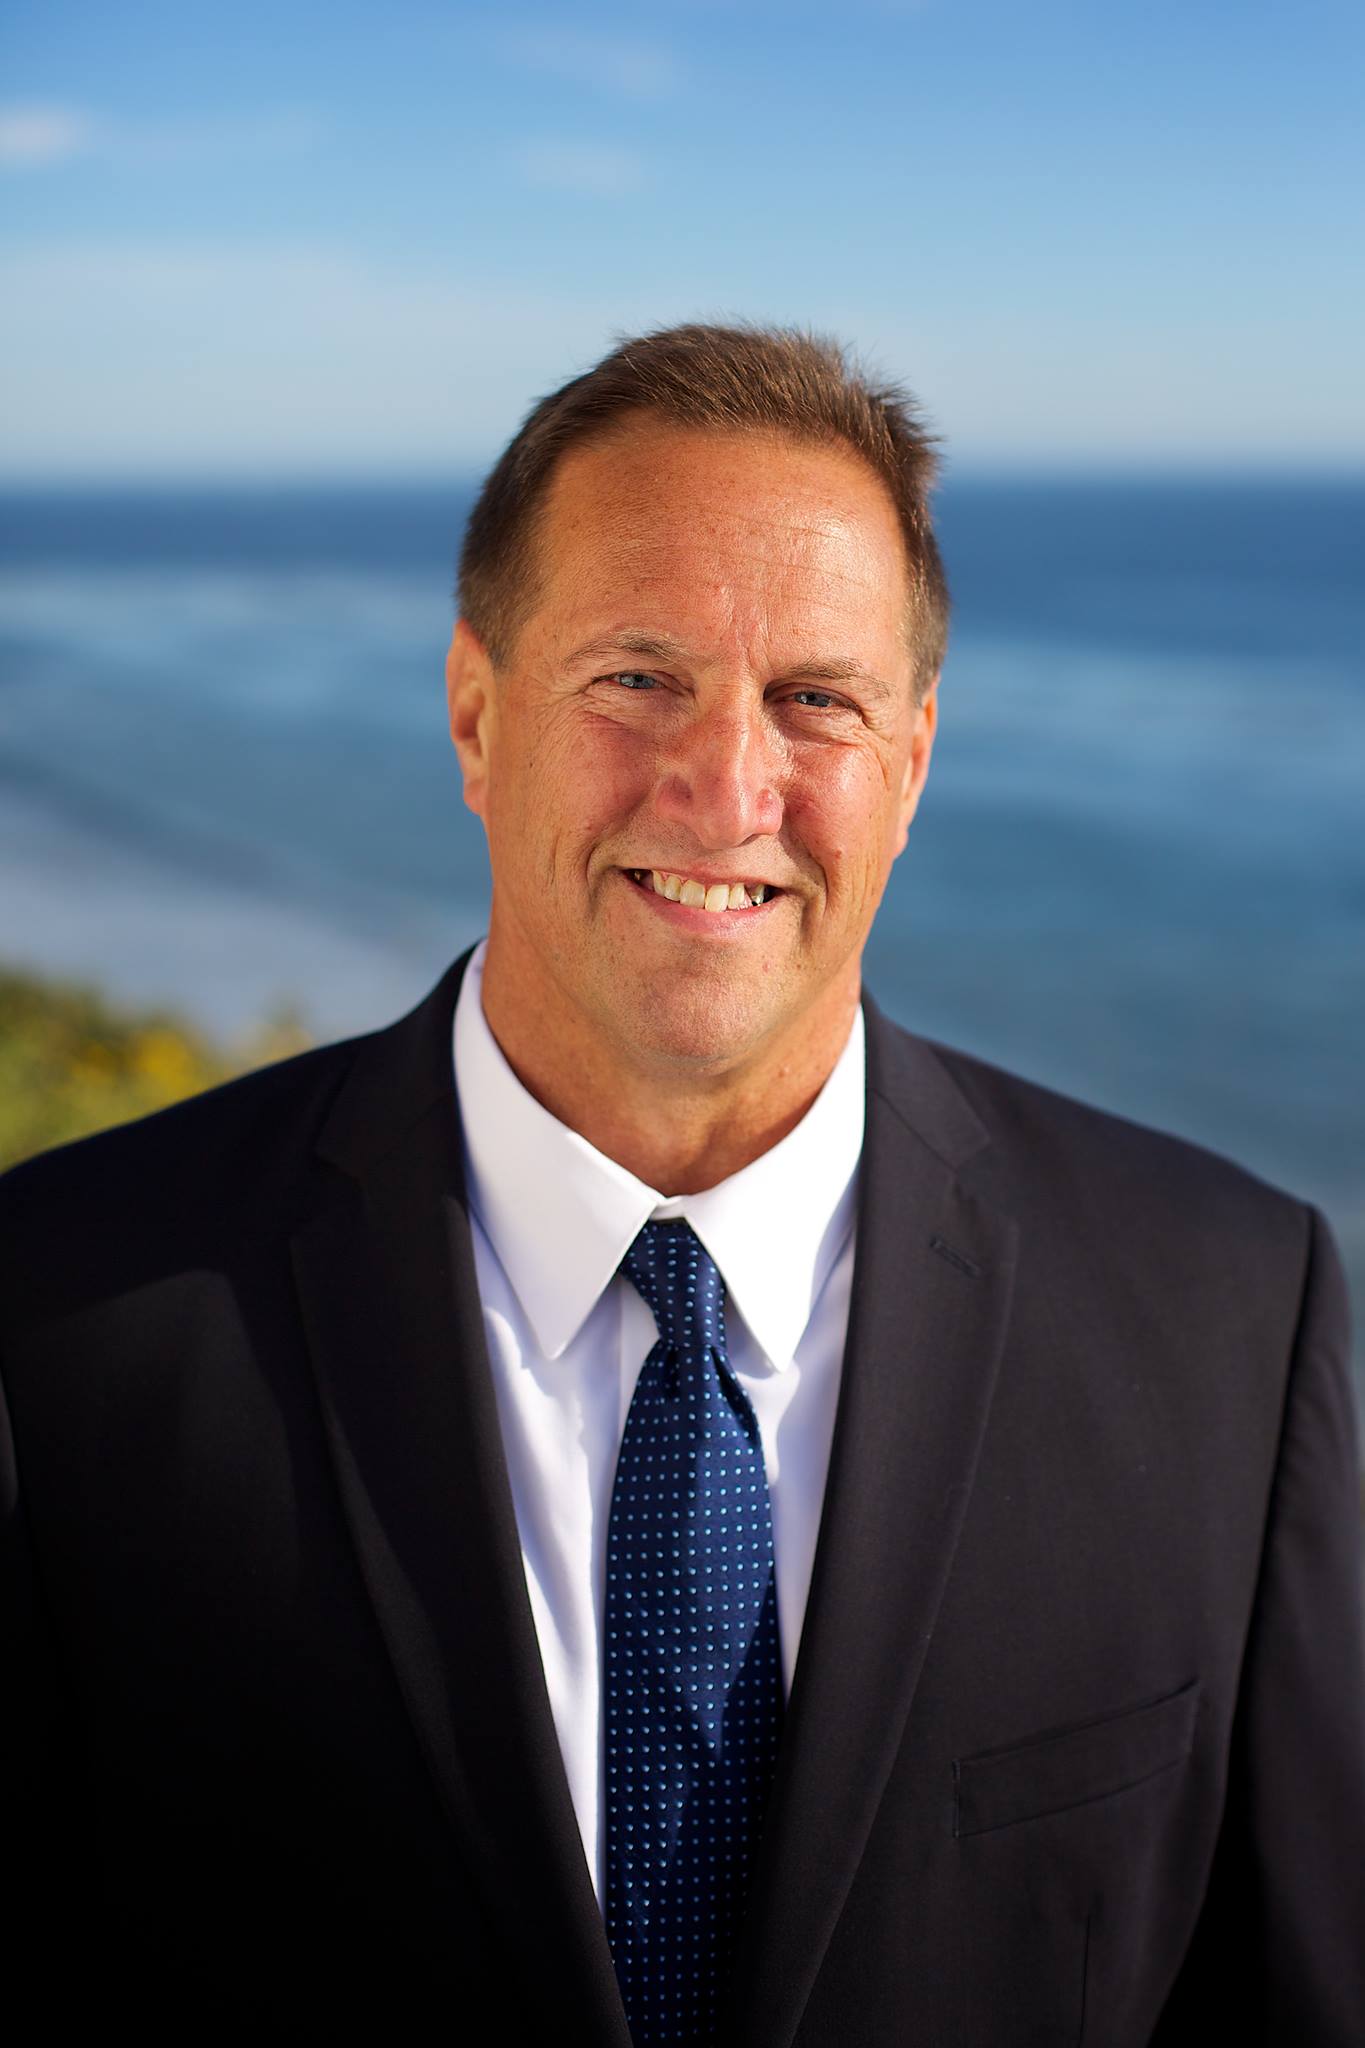 Mike Jordan for Santa Barbara City Council